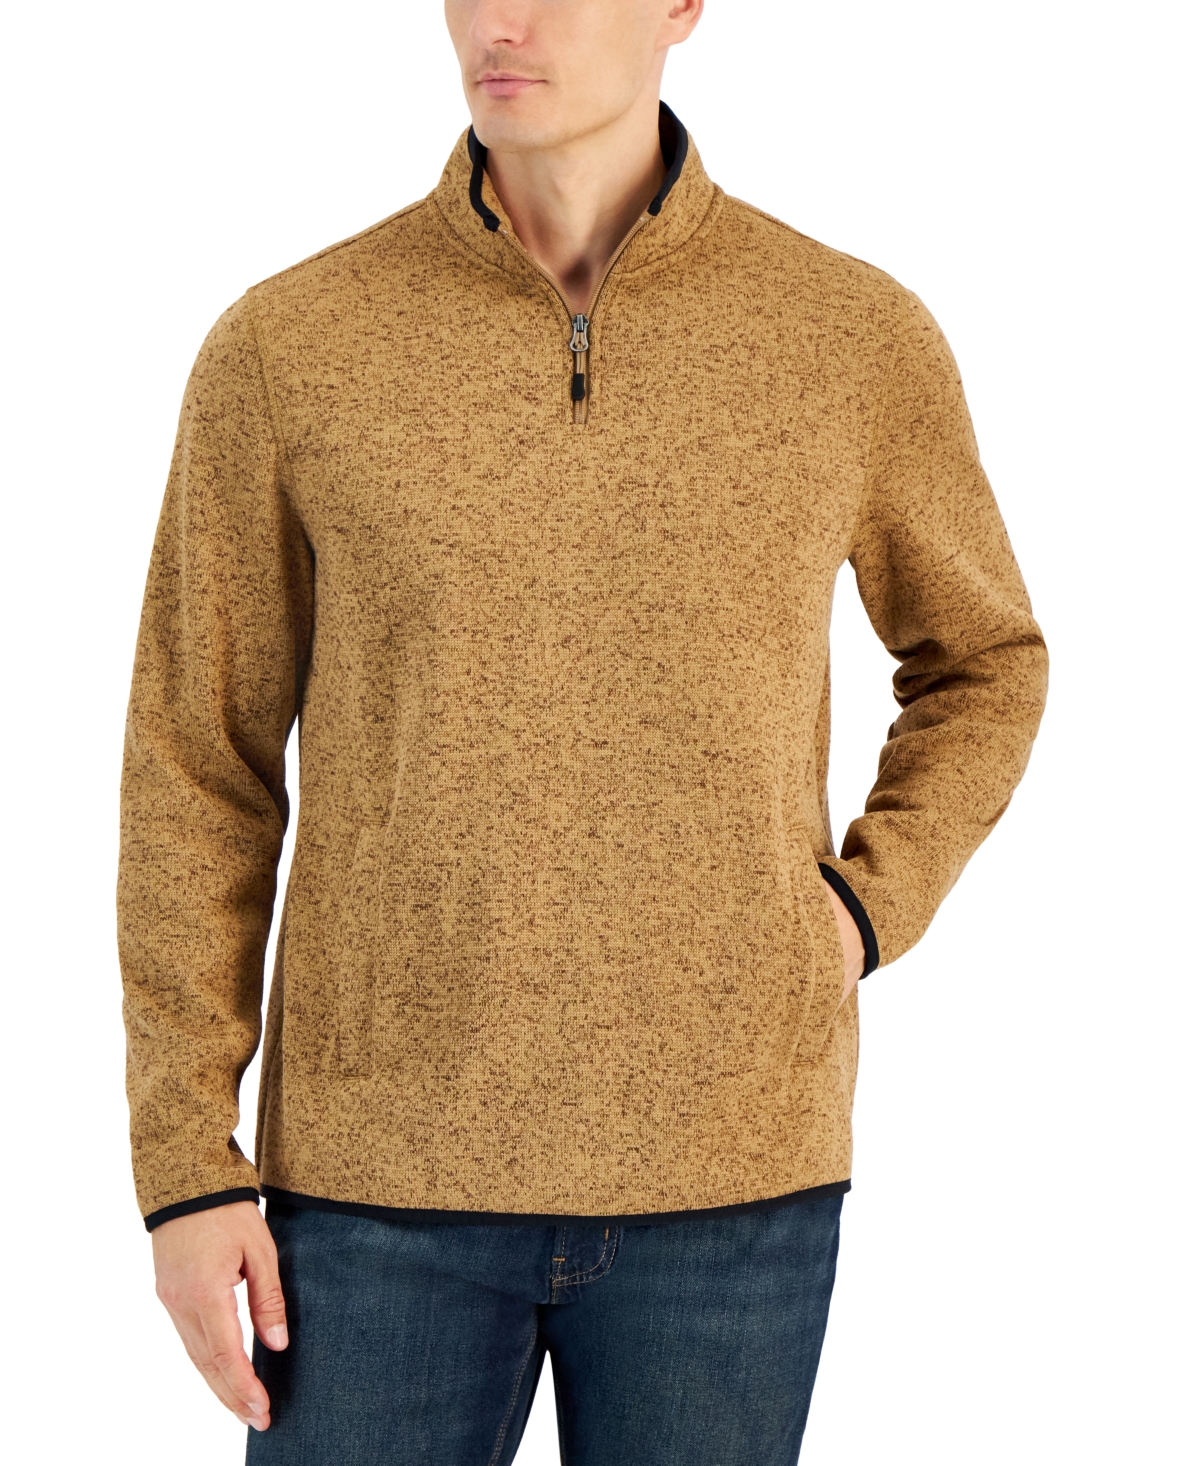 Men's Quarter-Zip Fleece Sweater, Created for Macy's - Mocha Coffee